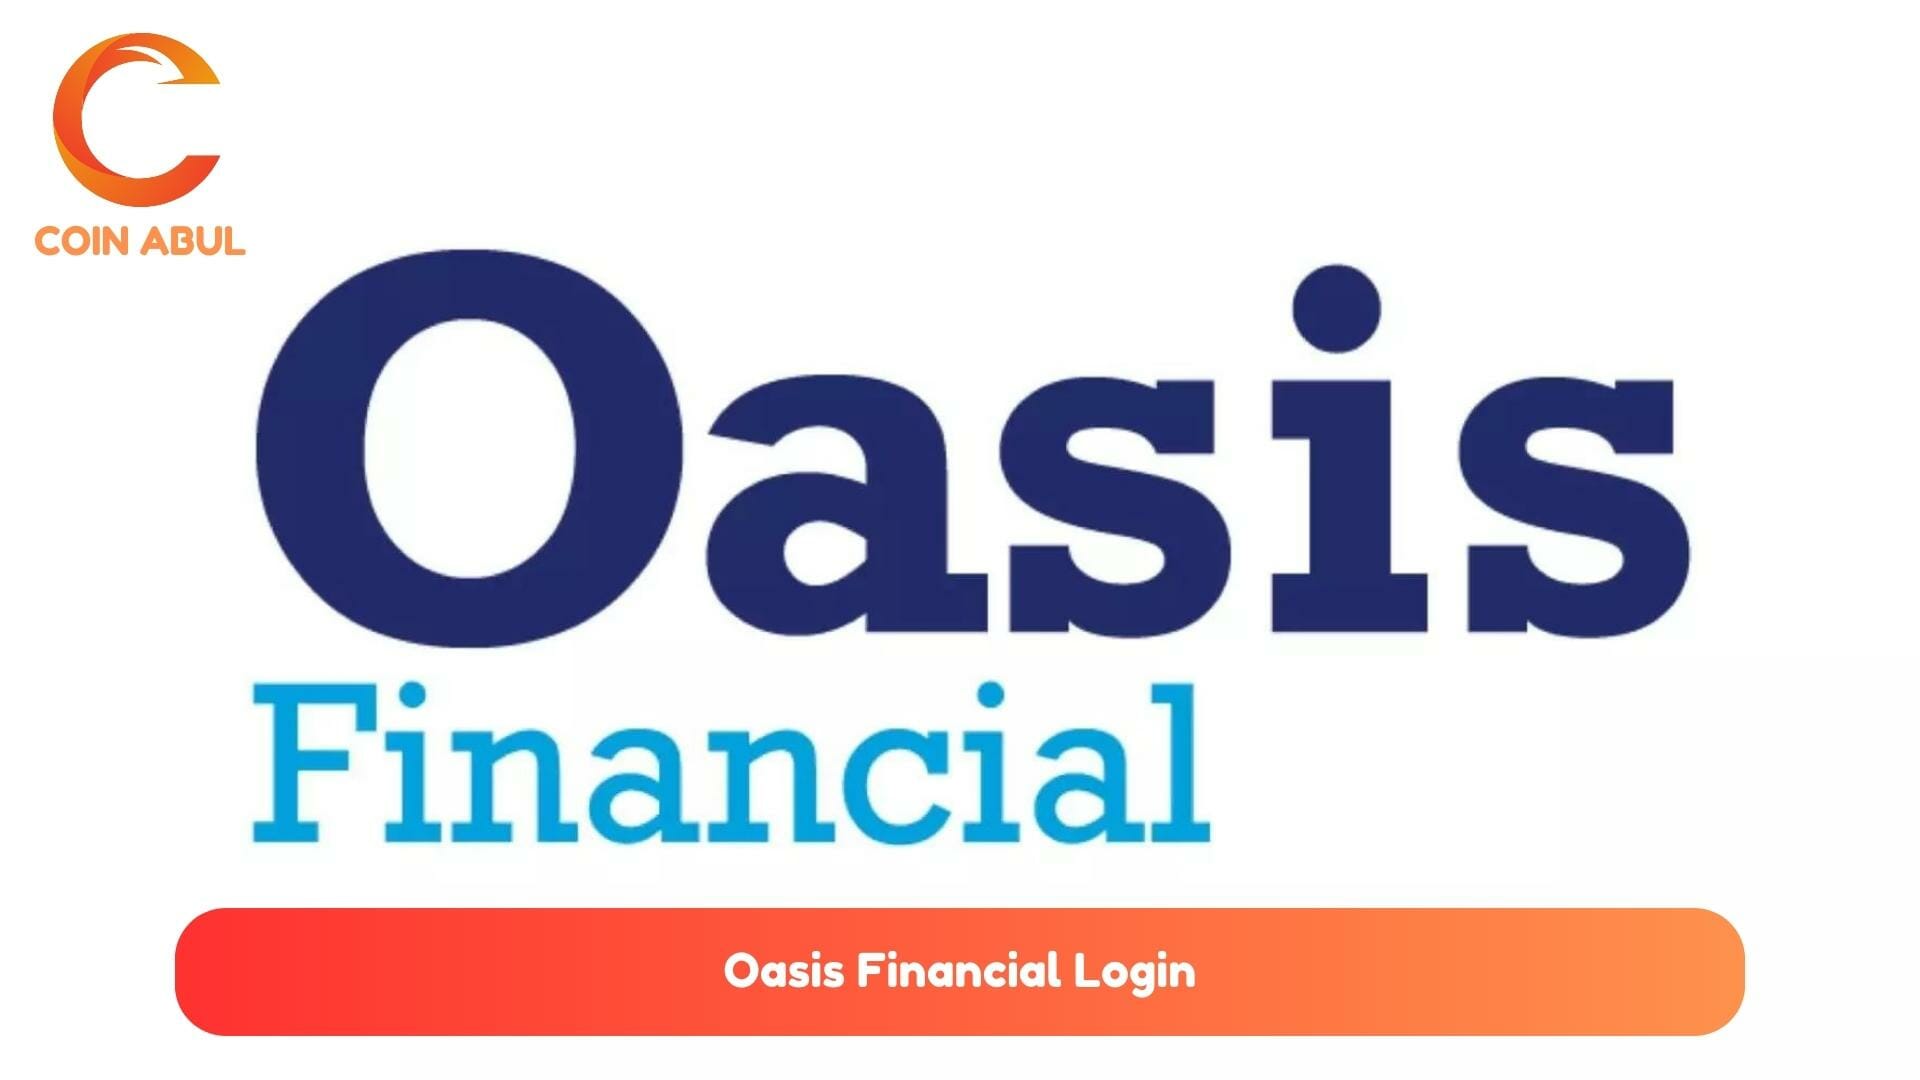 Oasis Financial Login